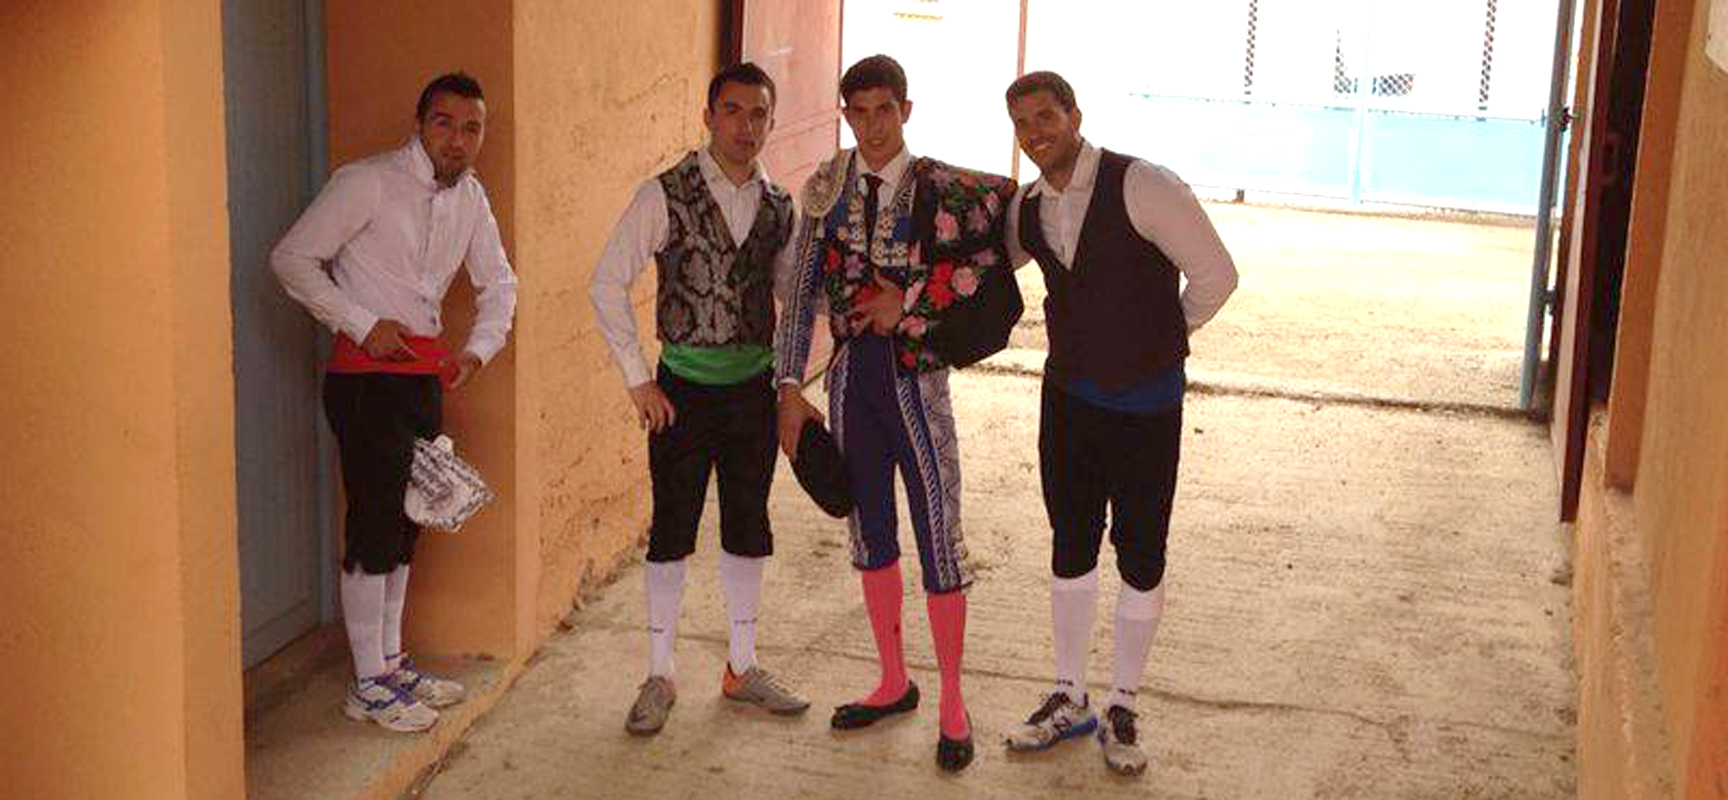 Albano Quintanilla, segundo por la izquierda, junto a otros de sus compañeros.